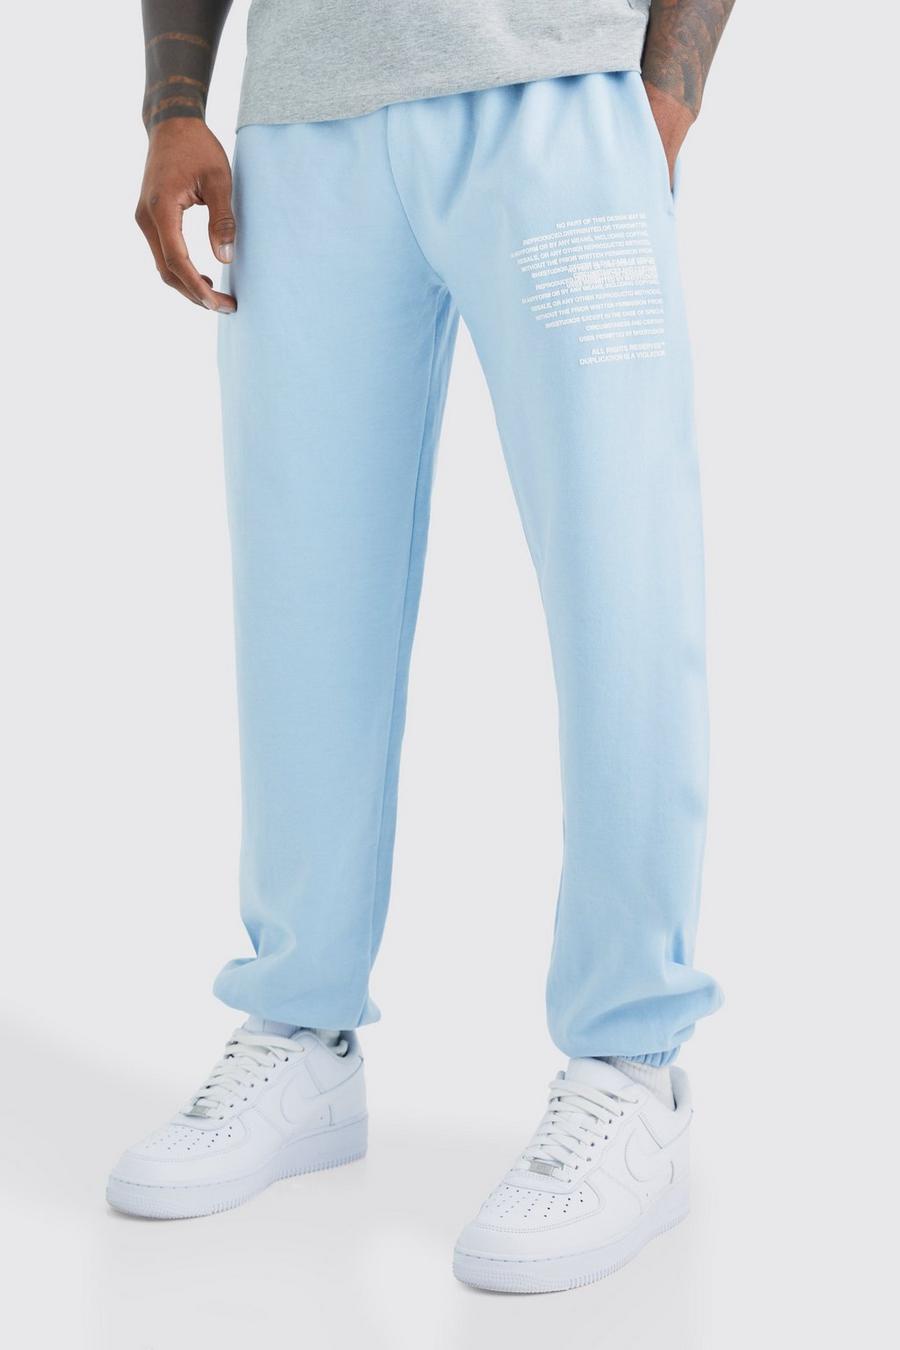 Pantaloni tuta con grafica di testo, Light blue image number 1